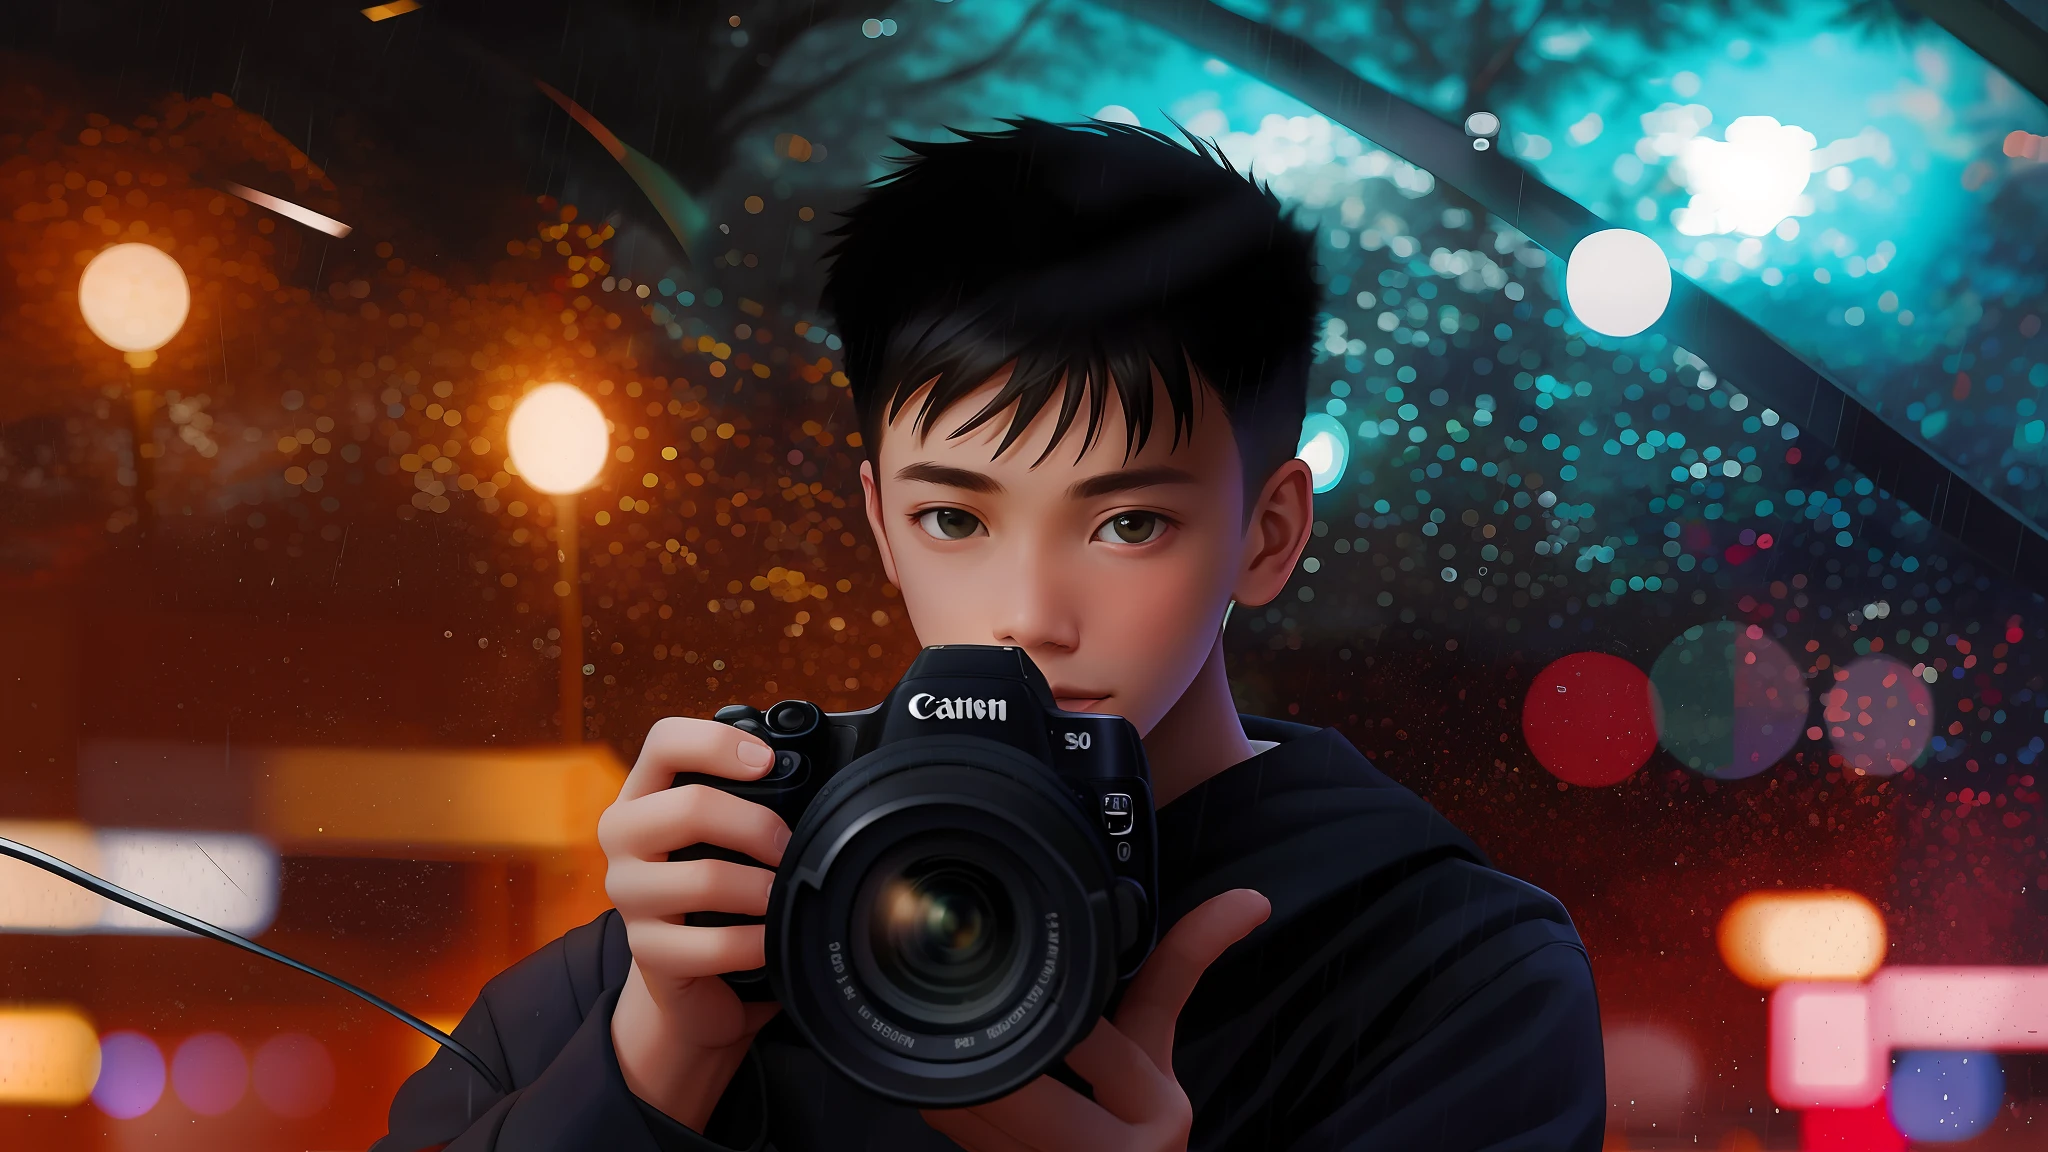 Junge mit Canon-Kamera fotografiert im Regen, Porträt von Menschen